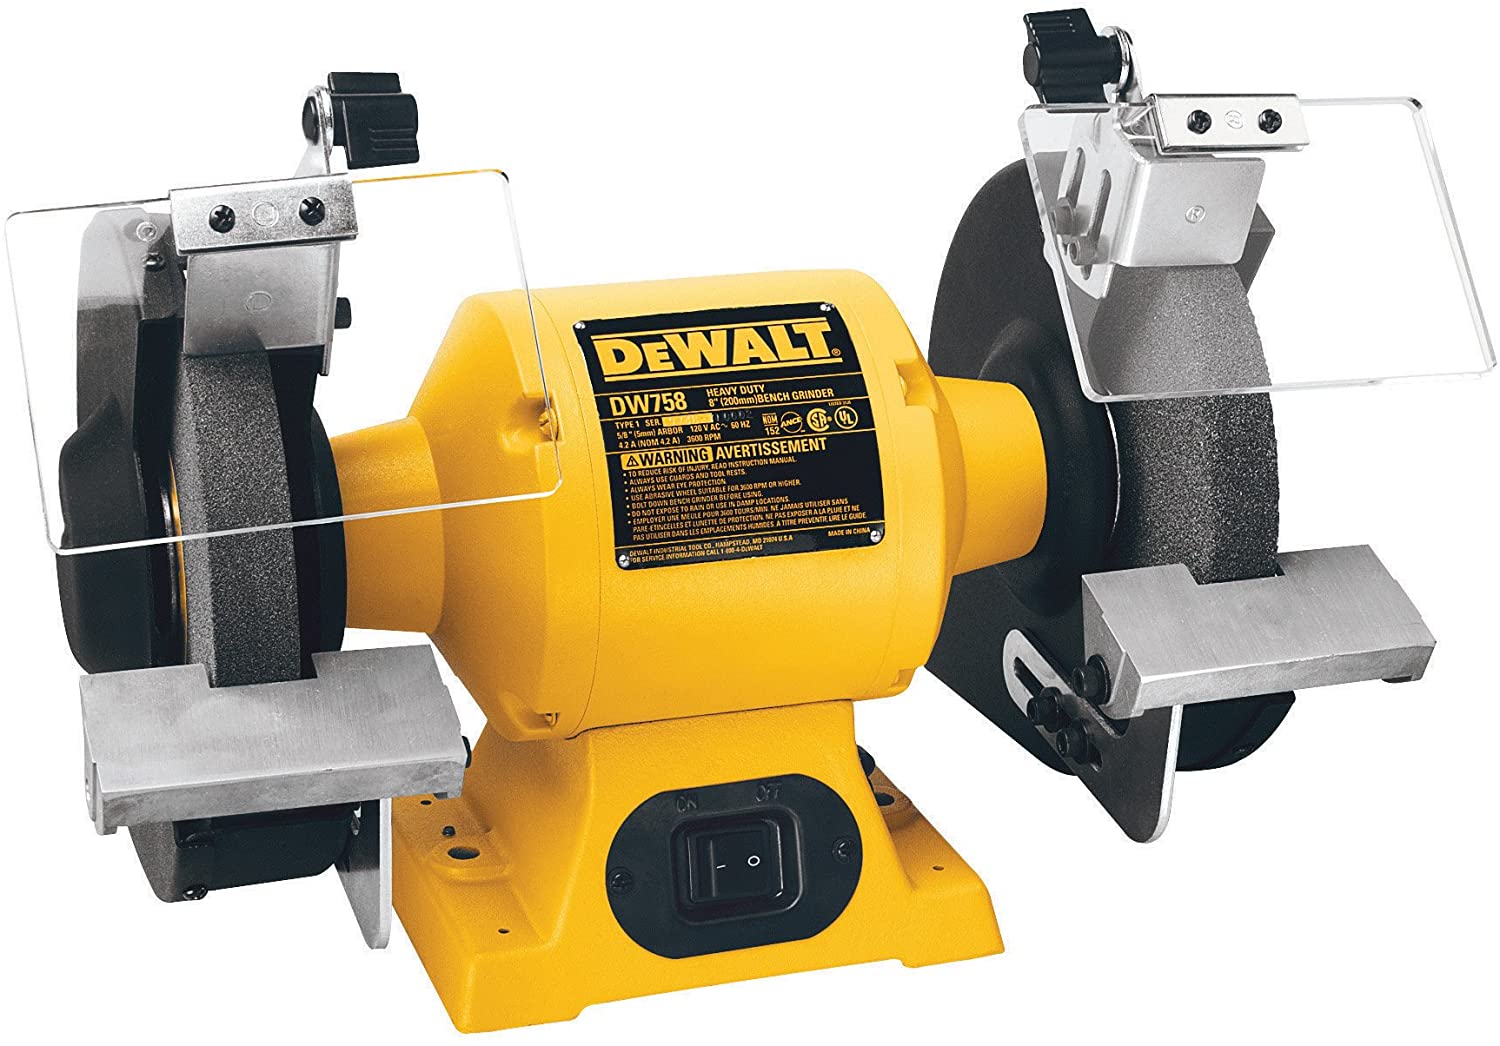 DEWALT DW758 8-inch Bench Grinder